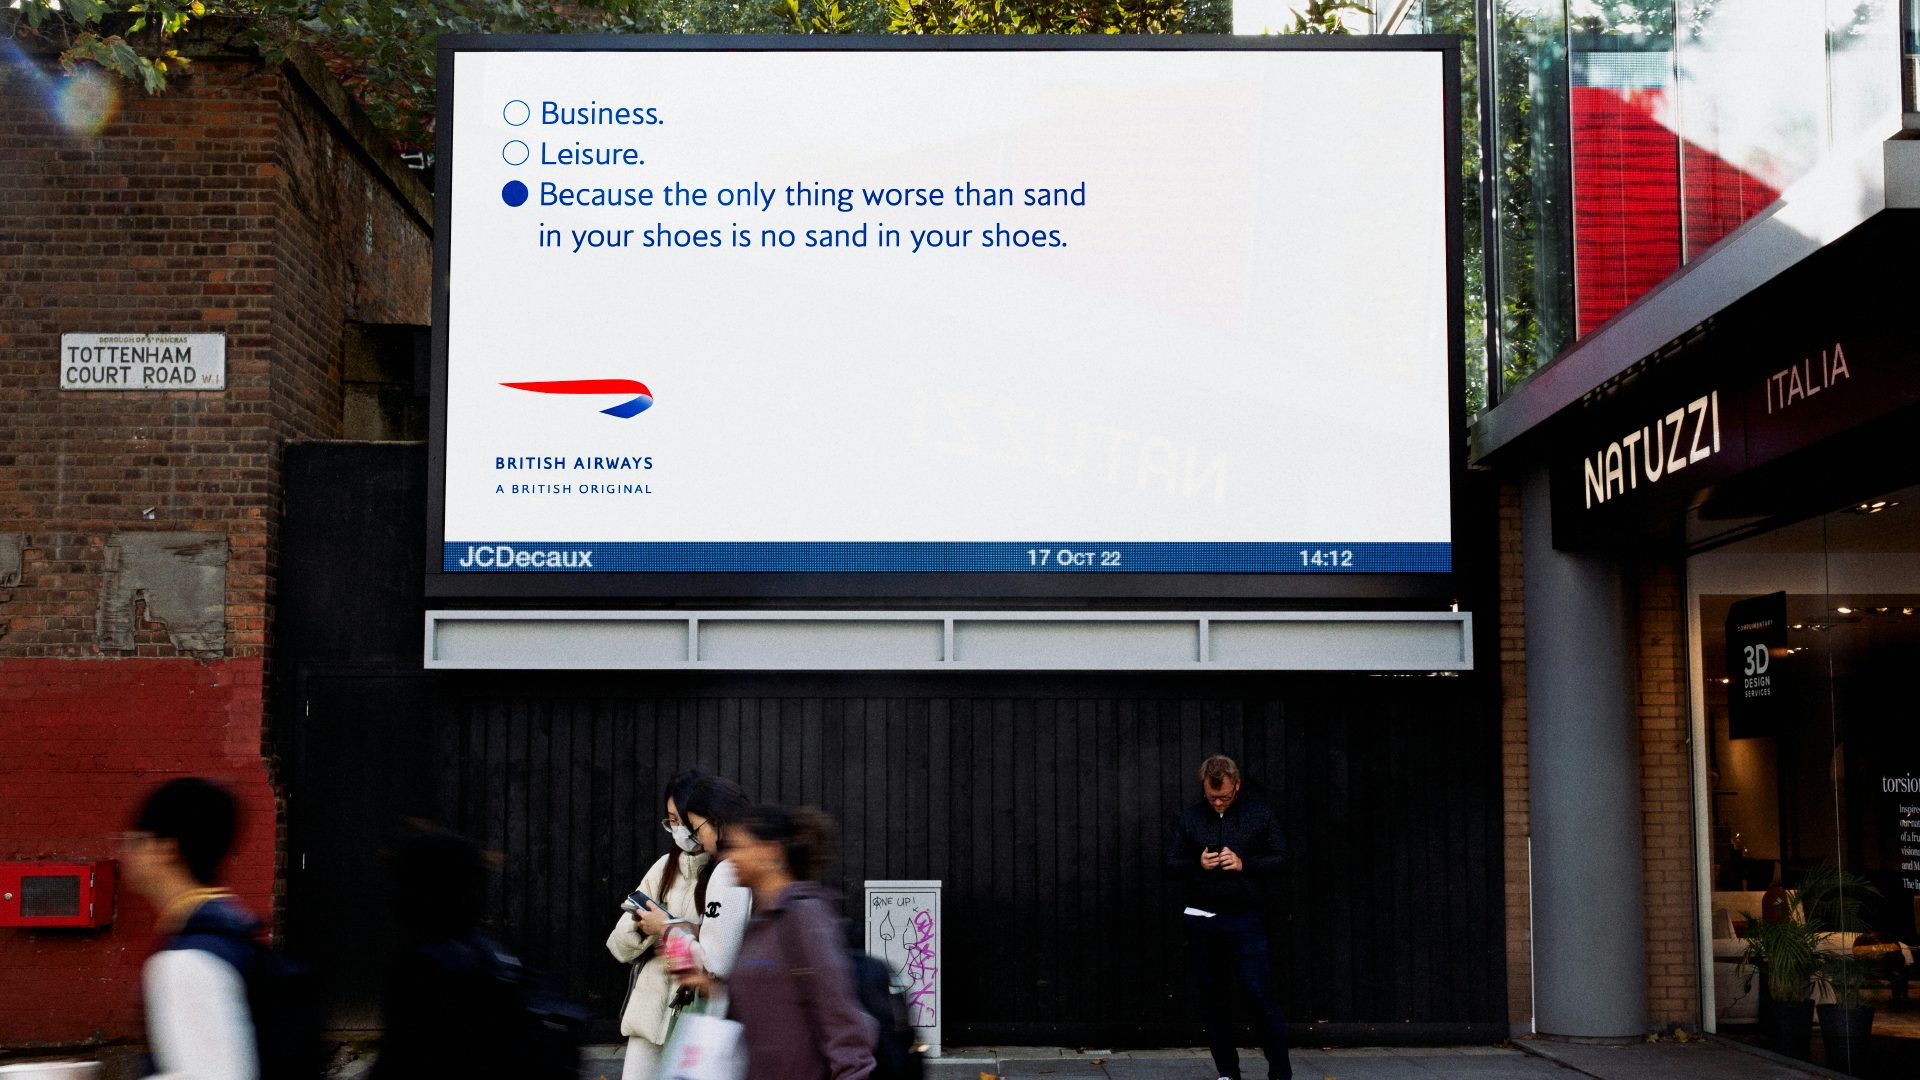 British Airways A British Original integrated campaign